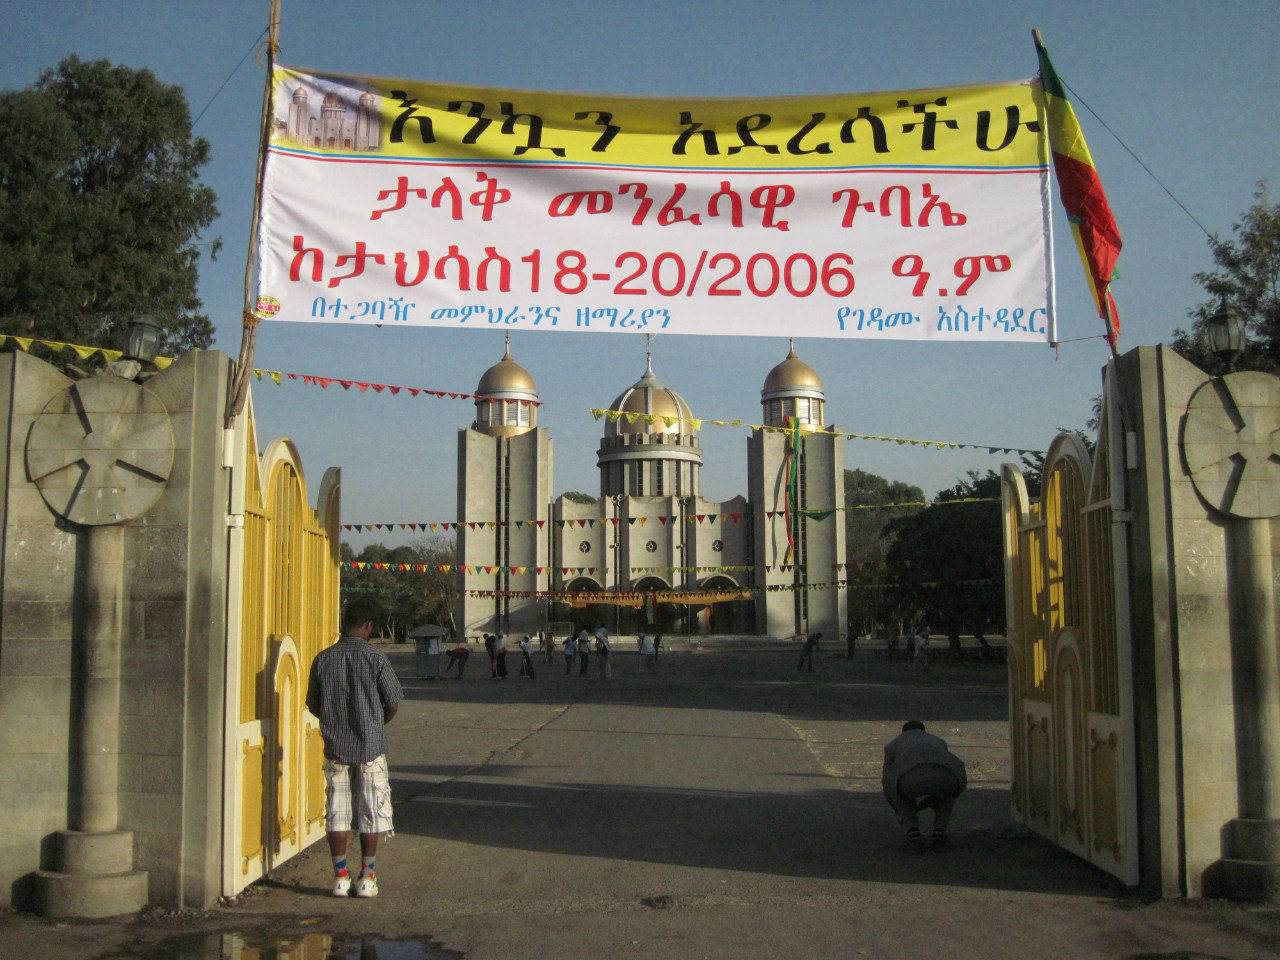 Арба-Мынч и Авасса Арба-Минч, Эфиопия